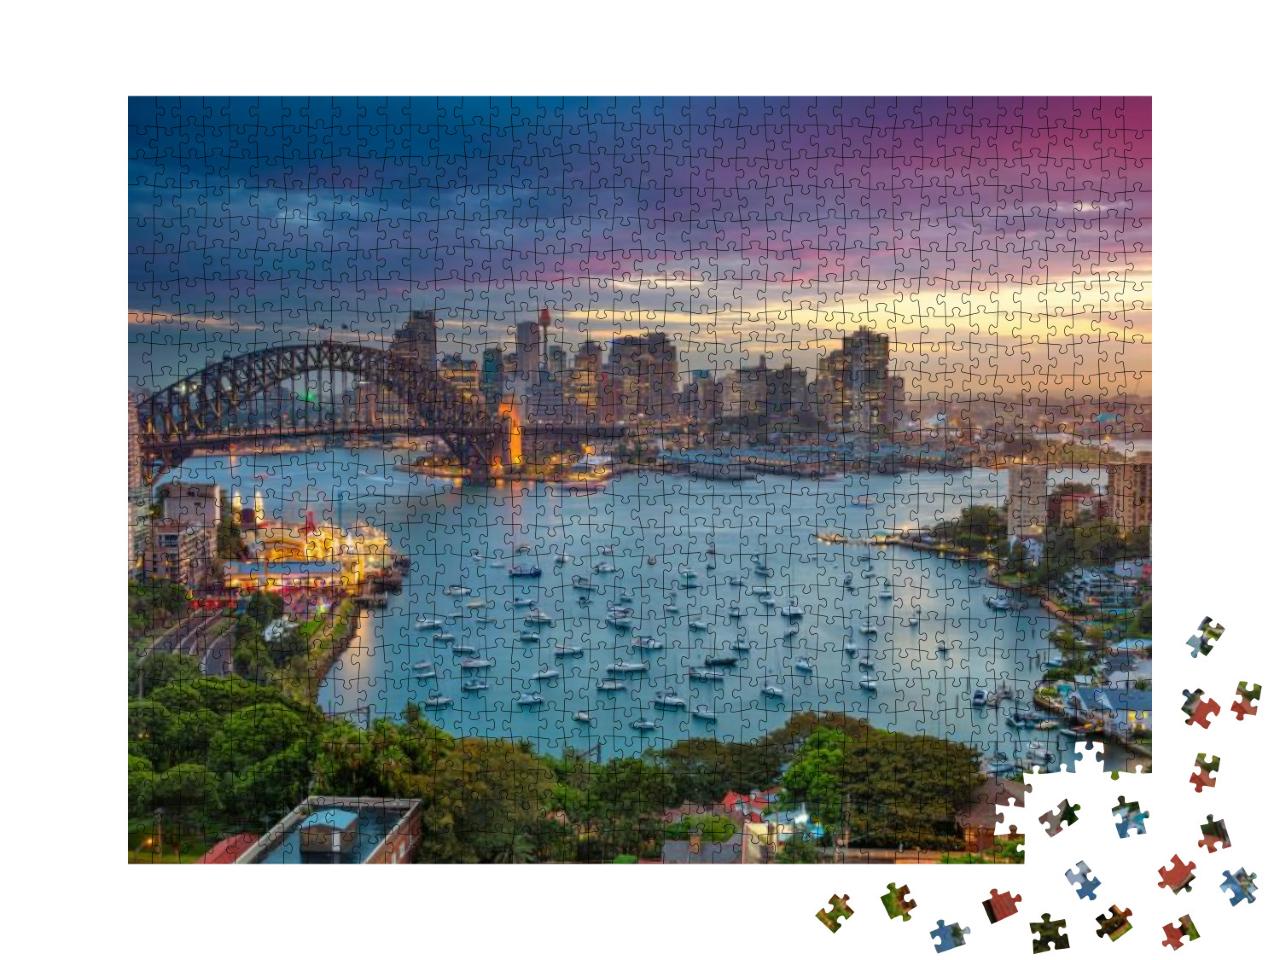 Puzzle 1000 Teile „Sydney“